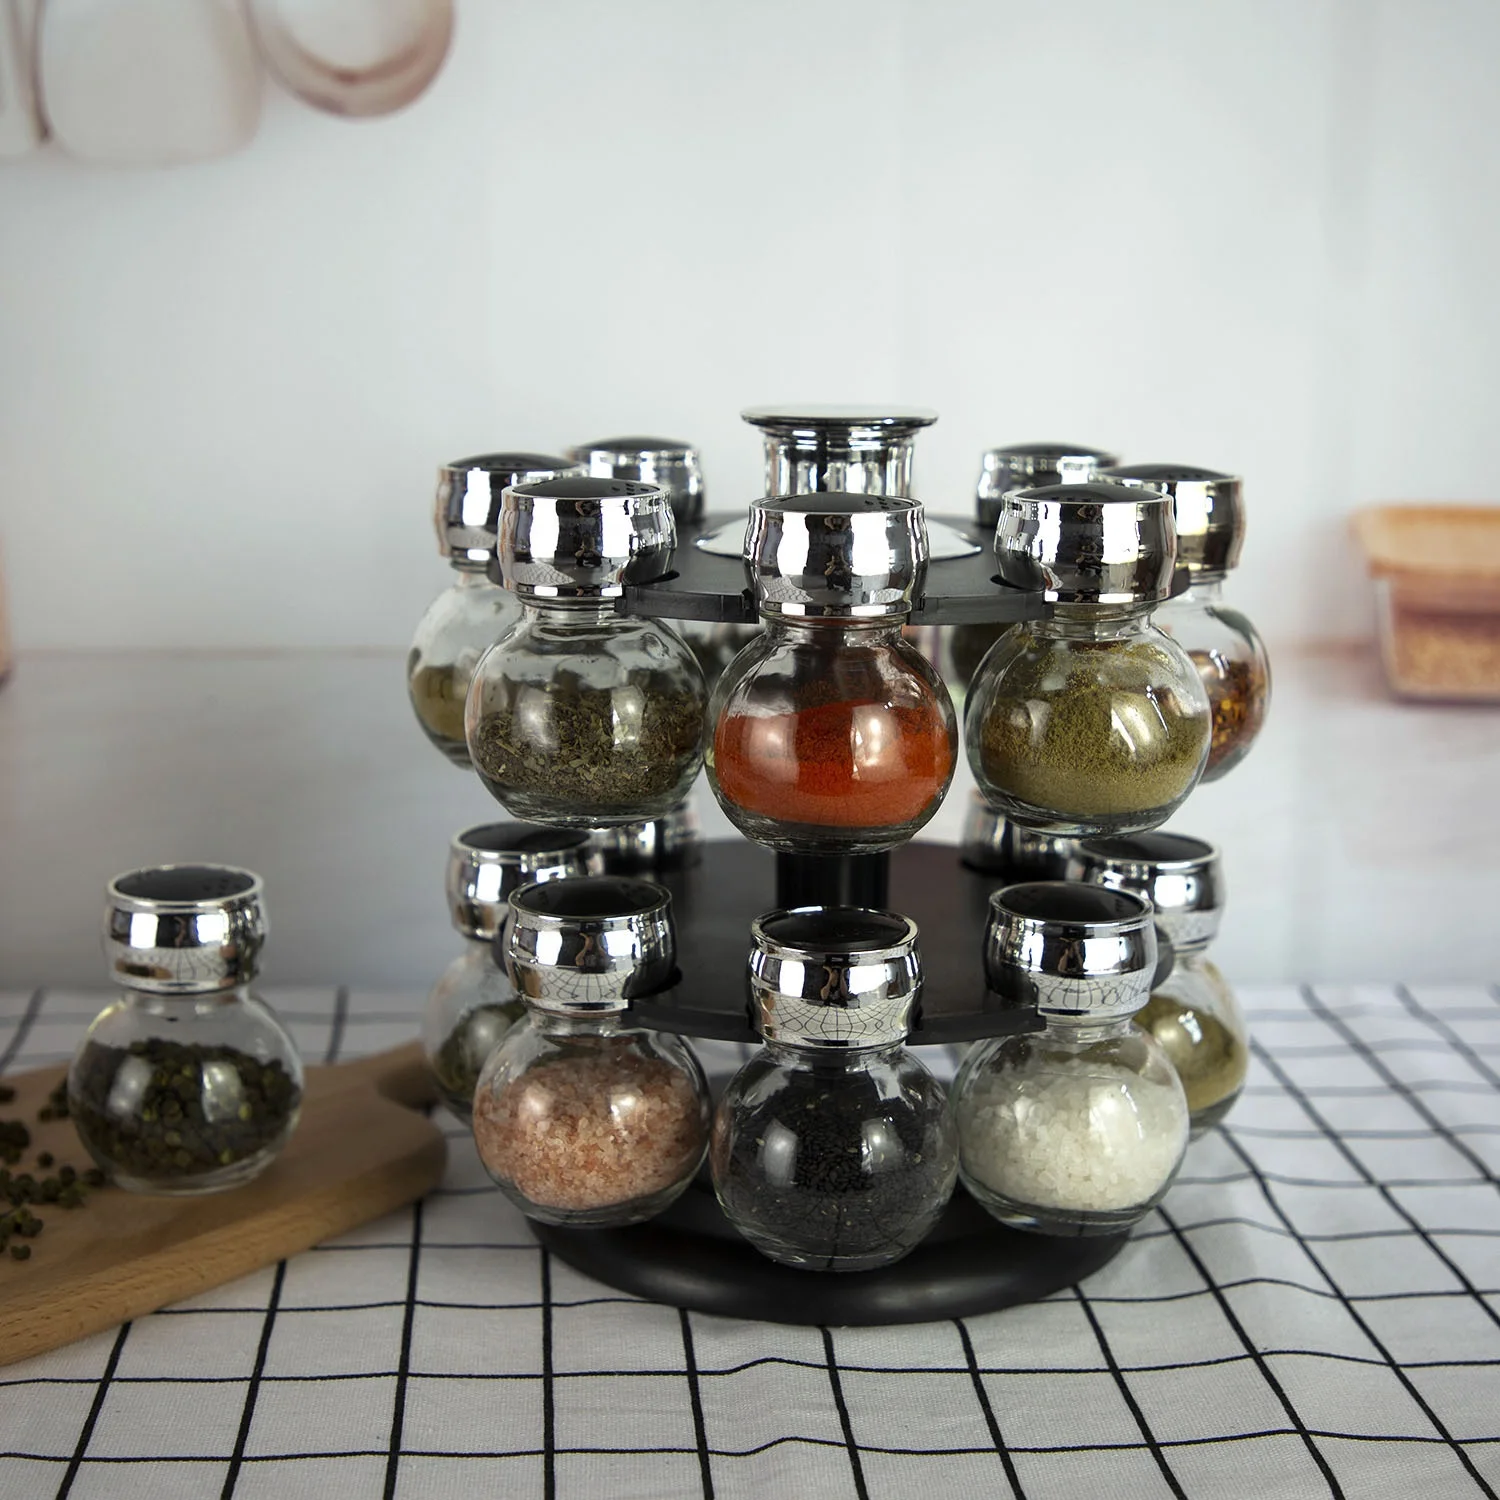 Кухонные принадлежности специй соль перец приправа набор стеклянных банок 16 шт 100 мл с кронштейн с вращением на стеллаж для выставки товаров